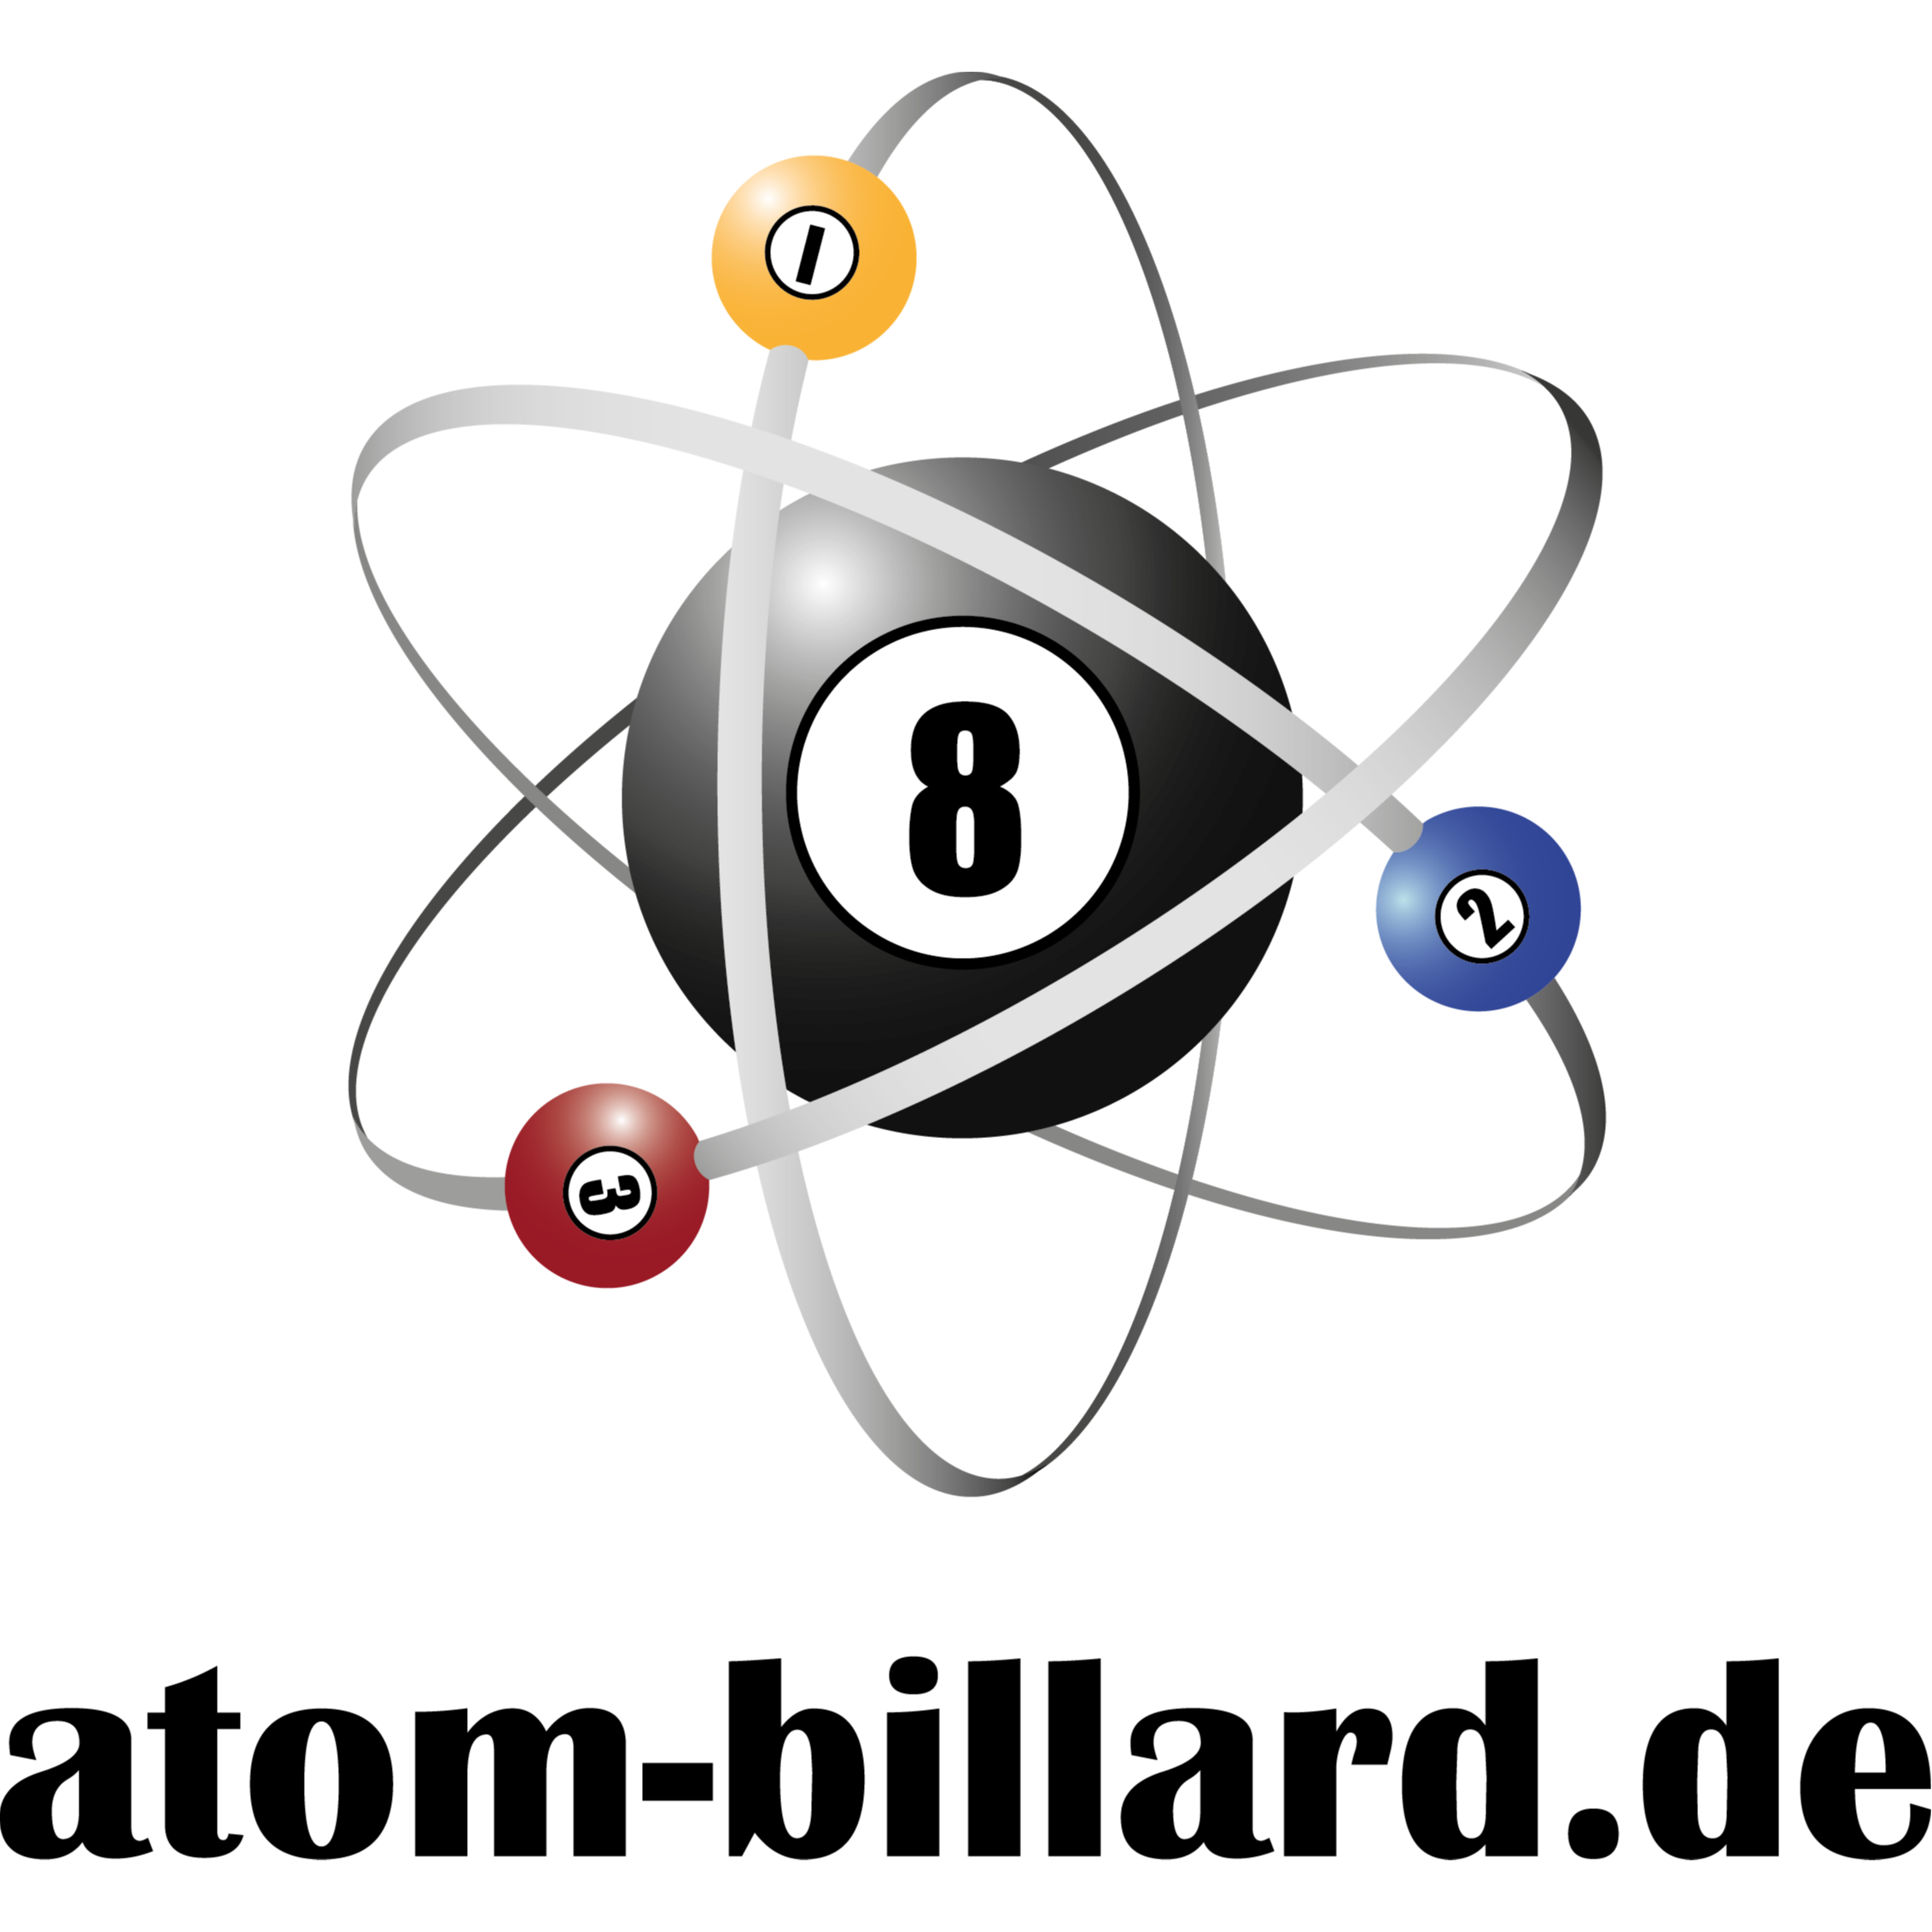 atom-billard.de GmbH